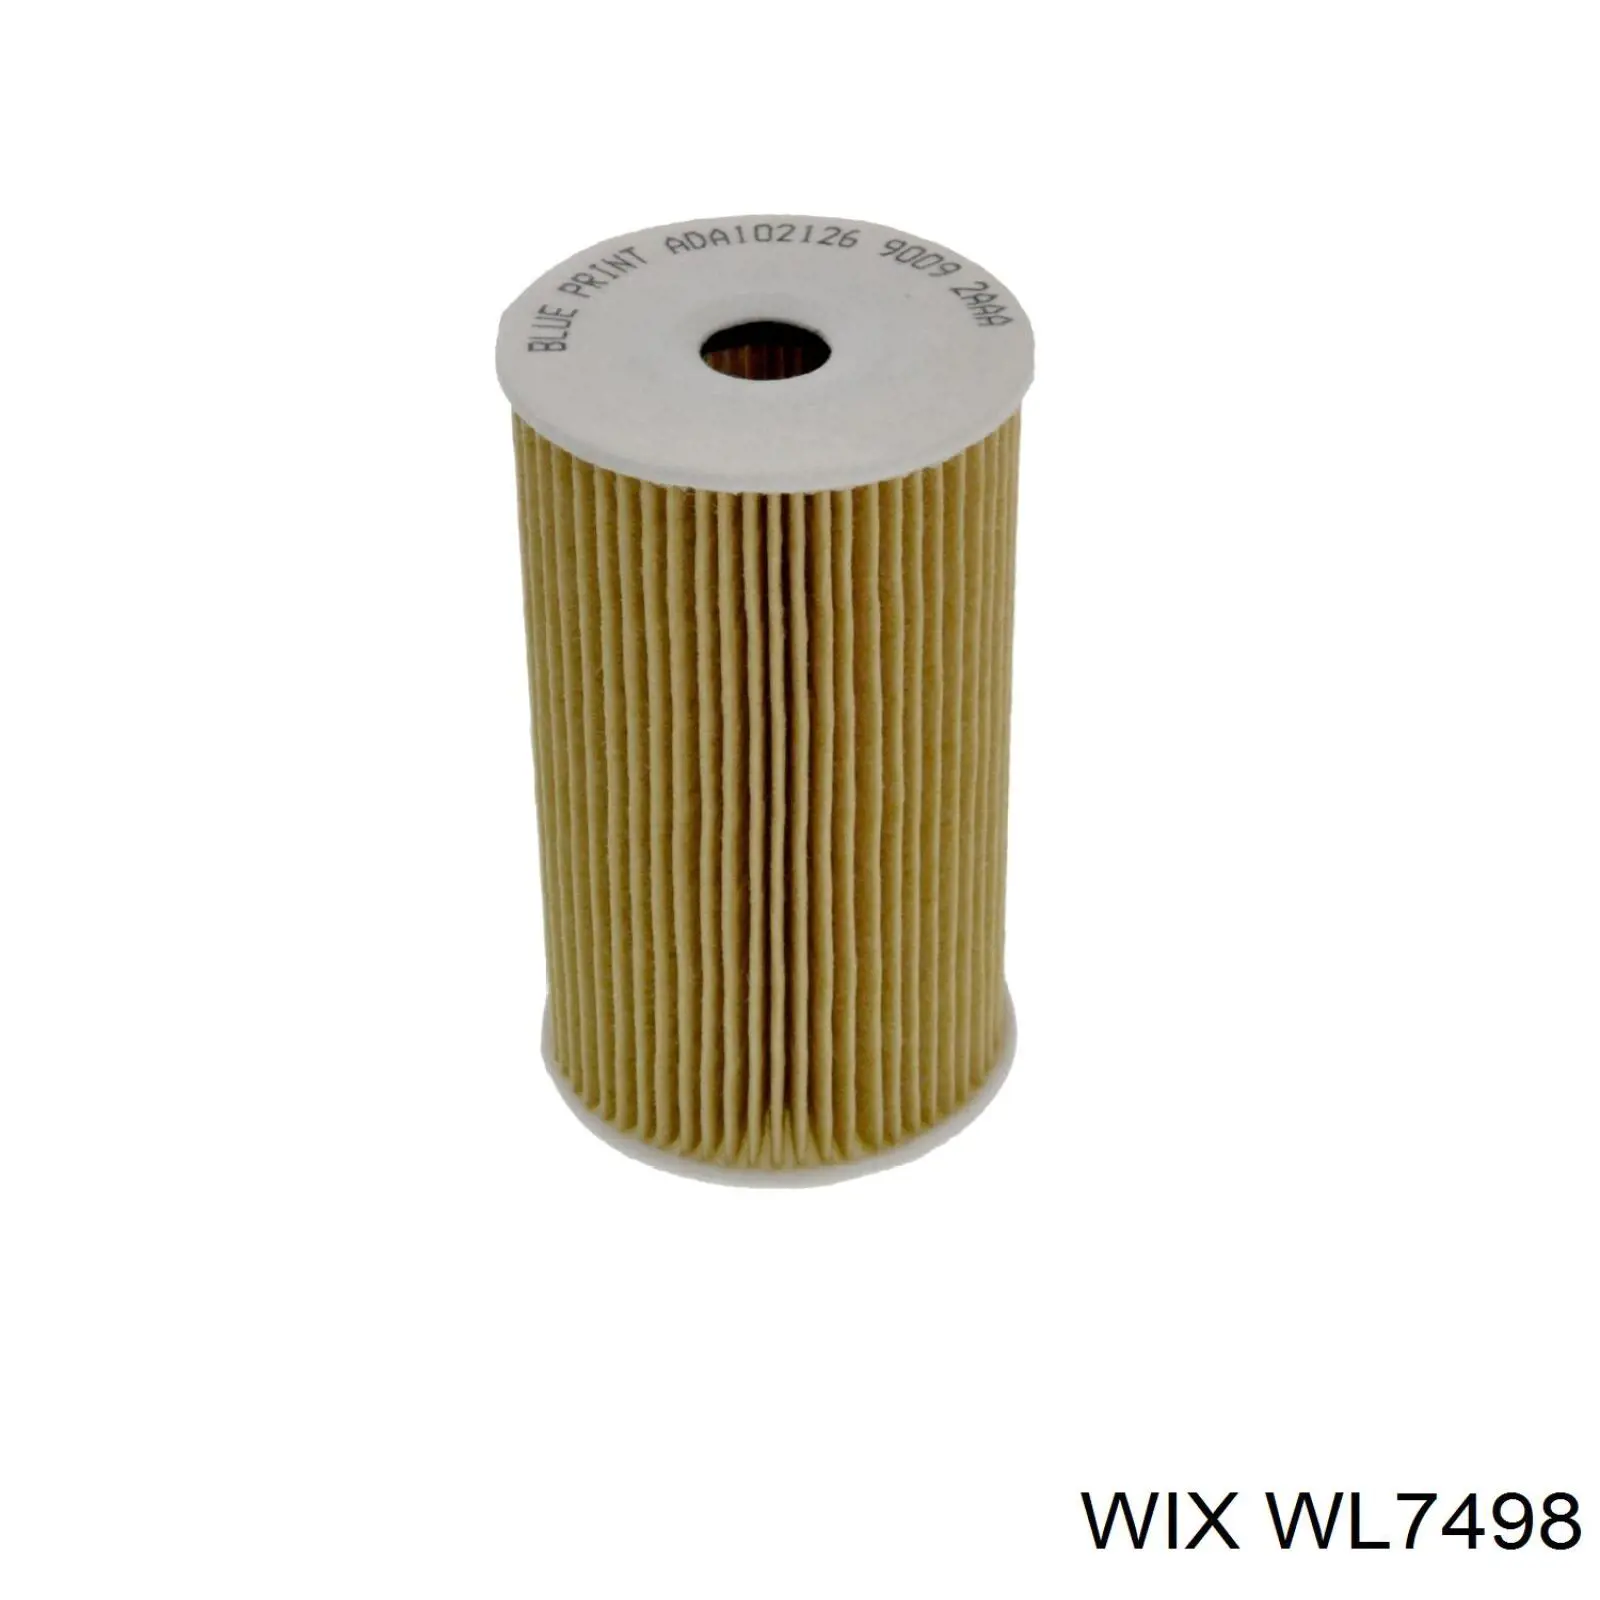 WL7498 WIX filtro de aceite